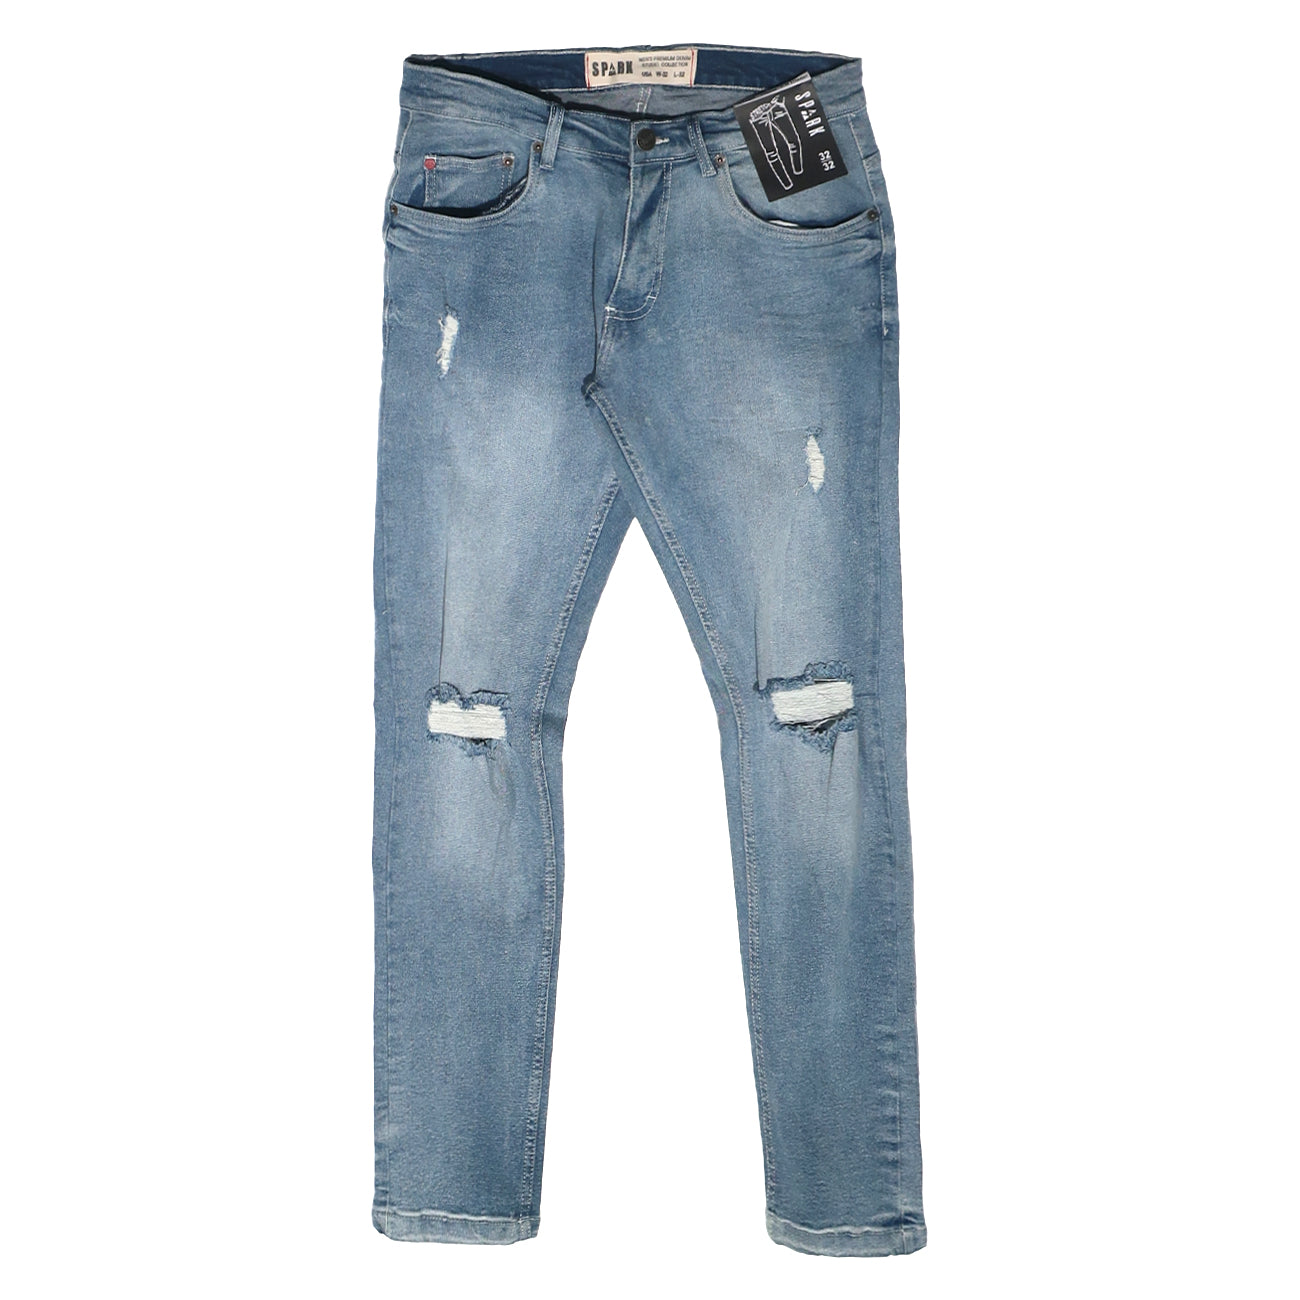 Wholesale Richie Li - Vintage Blue Jeans - RLC-117